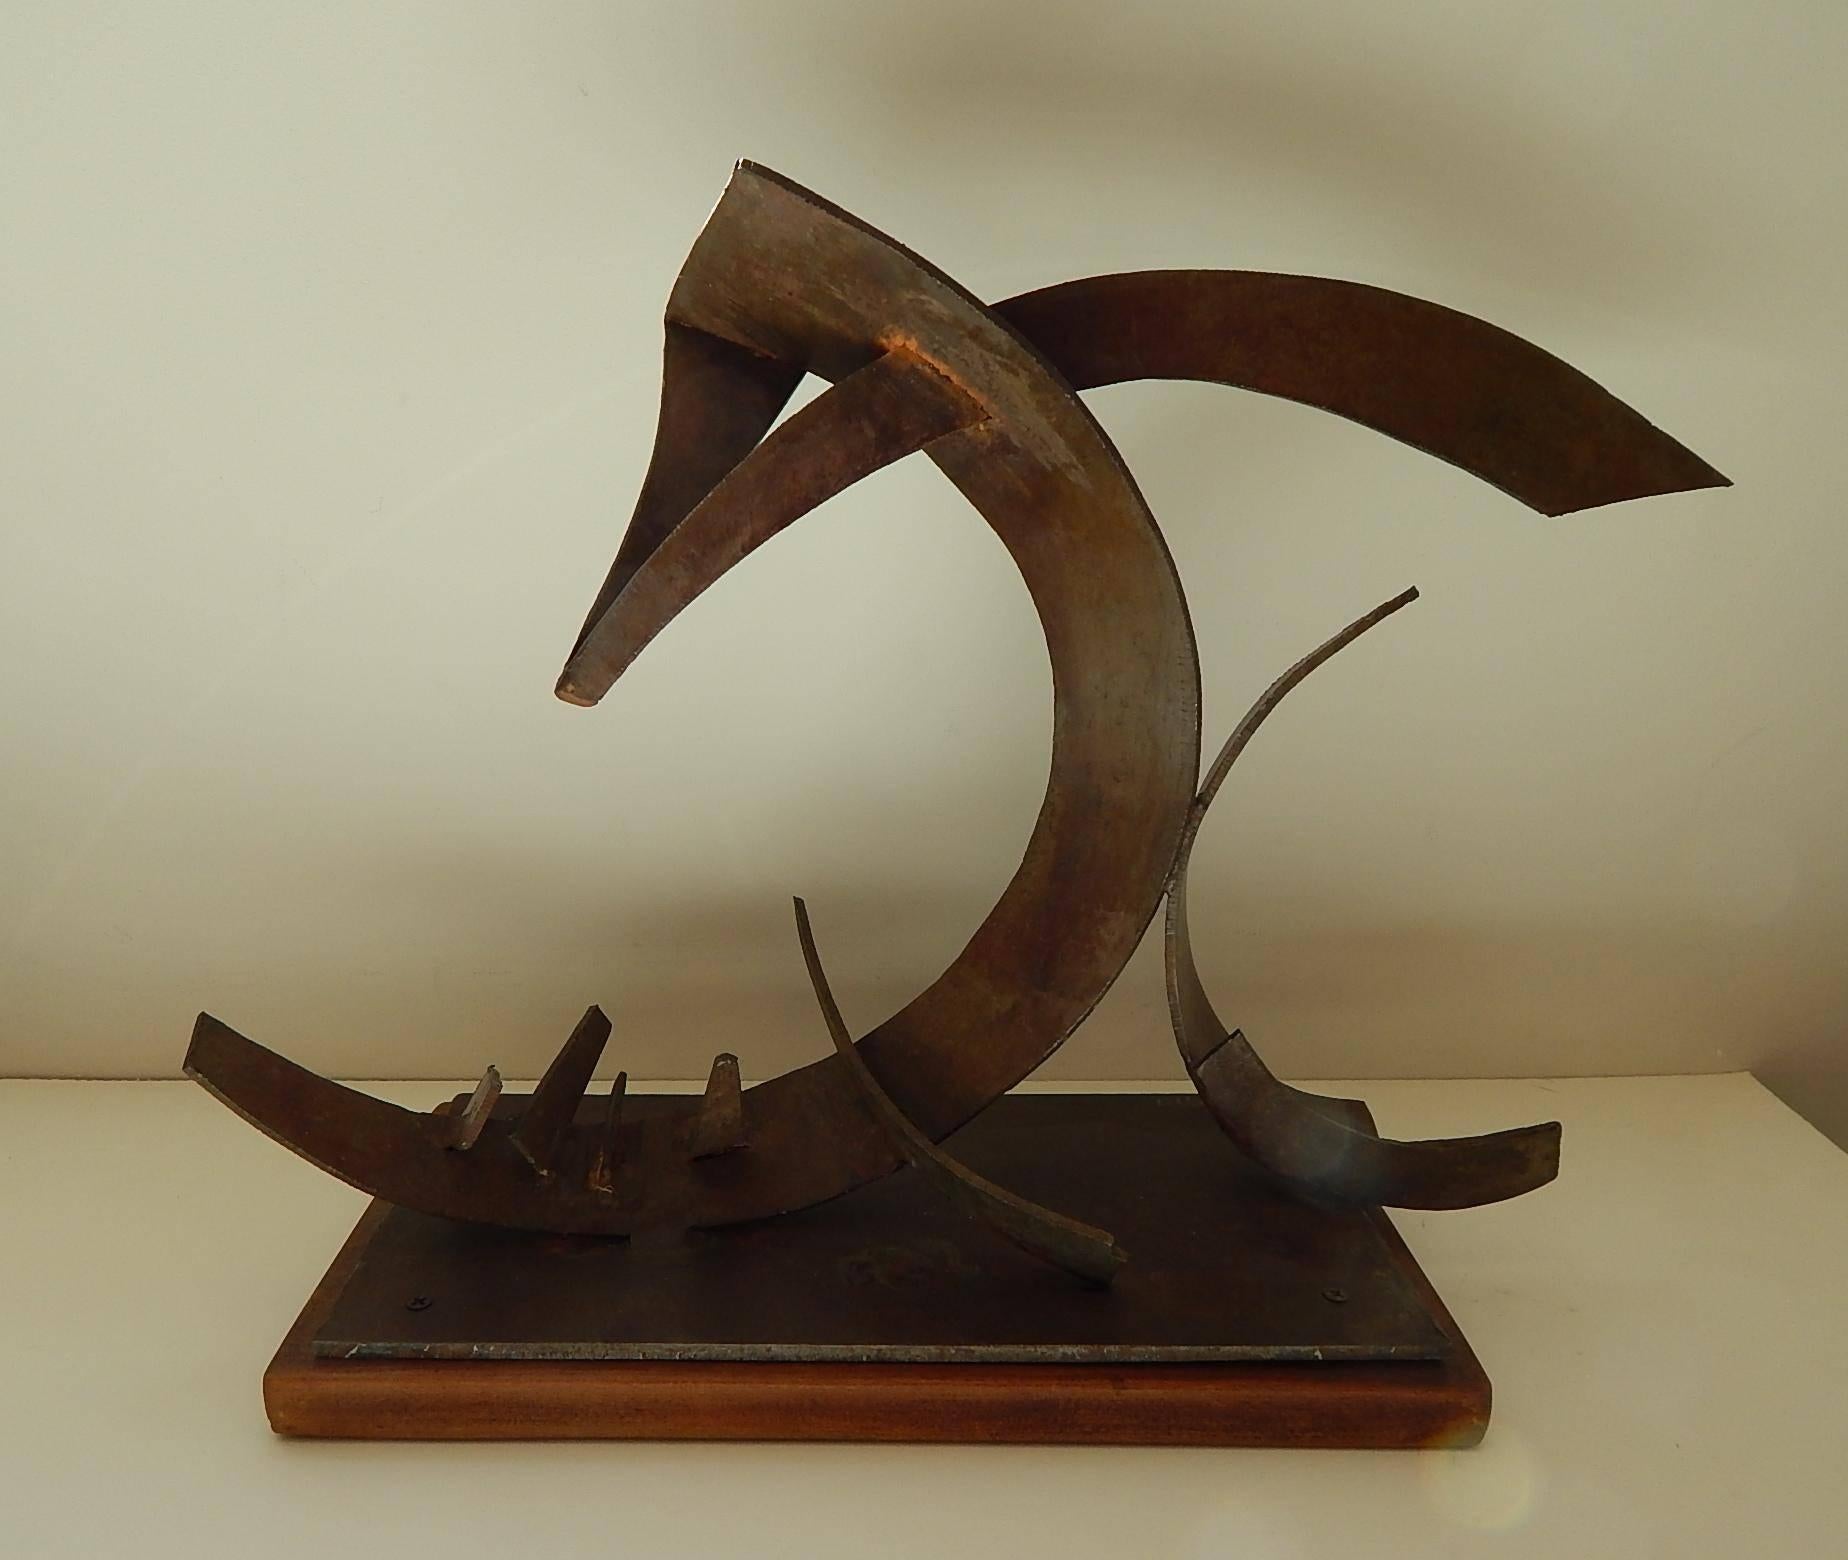 Ted Egri modern sculpture, welded metal.
Measures: 13